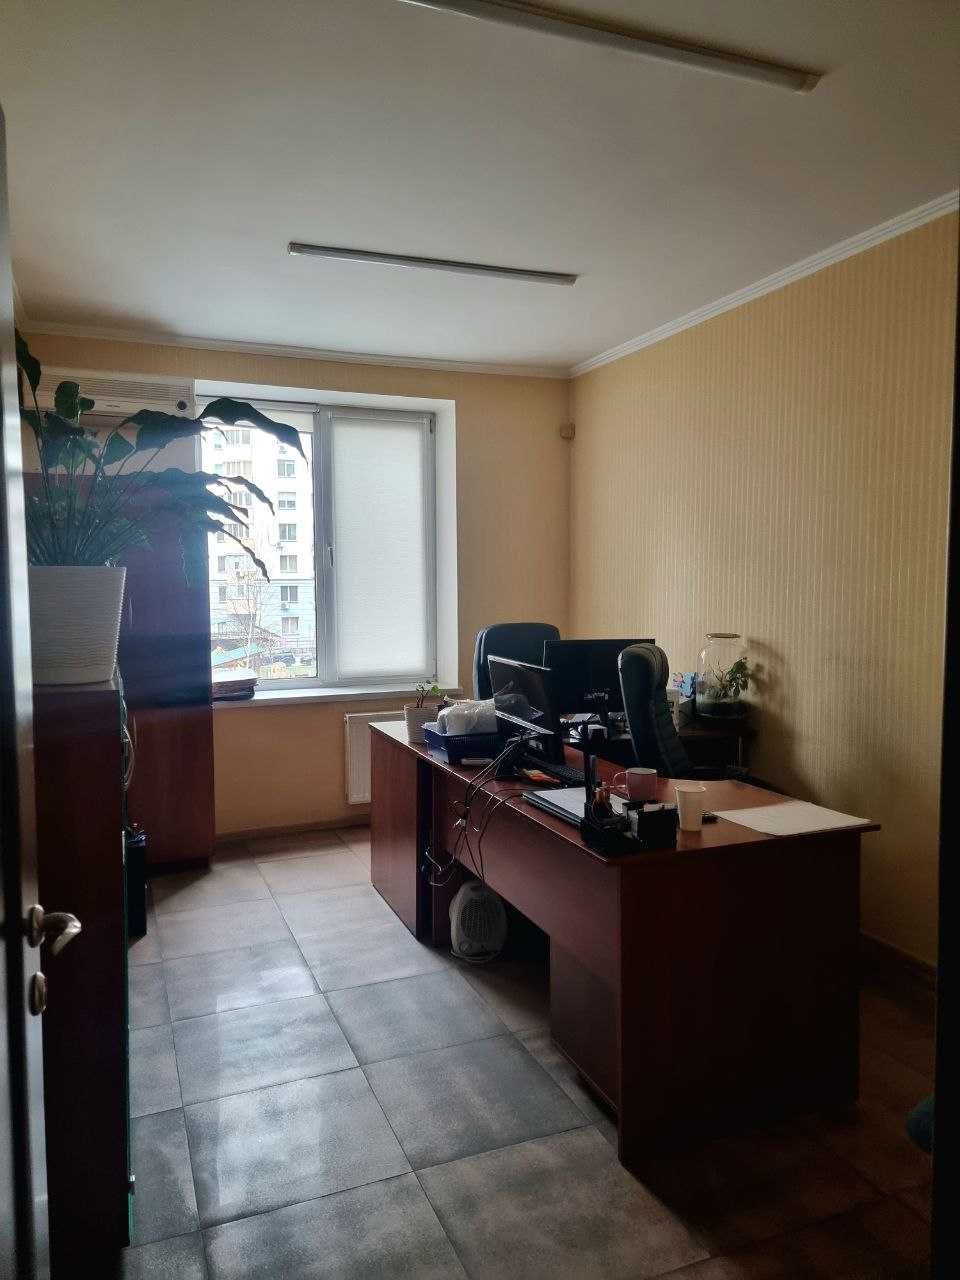 ЗНИЖКА! Продам квартиру 100 кв.м в ЖК Лікоград (район Теремки-2)